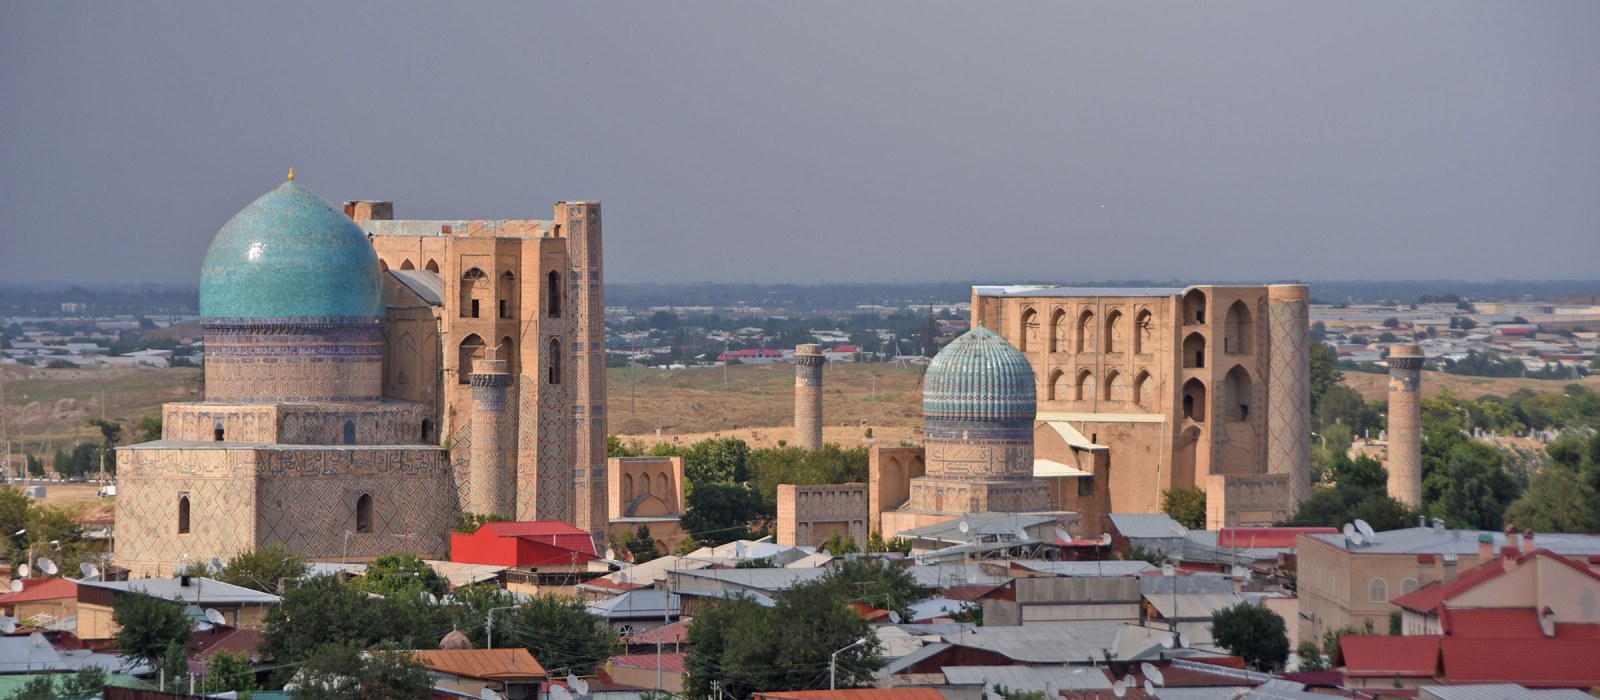 Usbekistan: Fernreise zu zweit